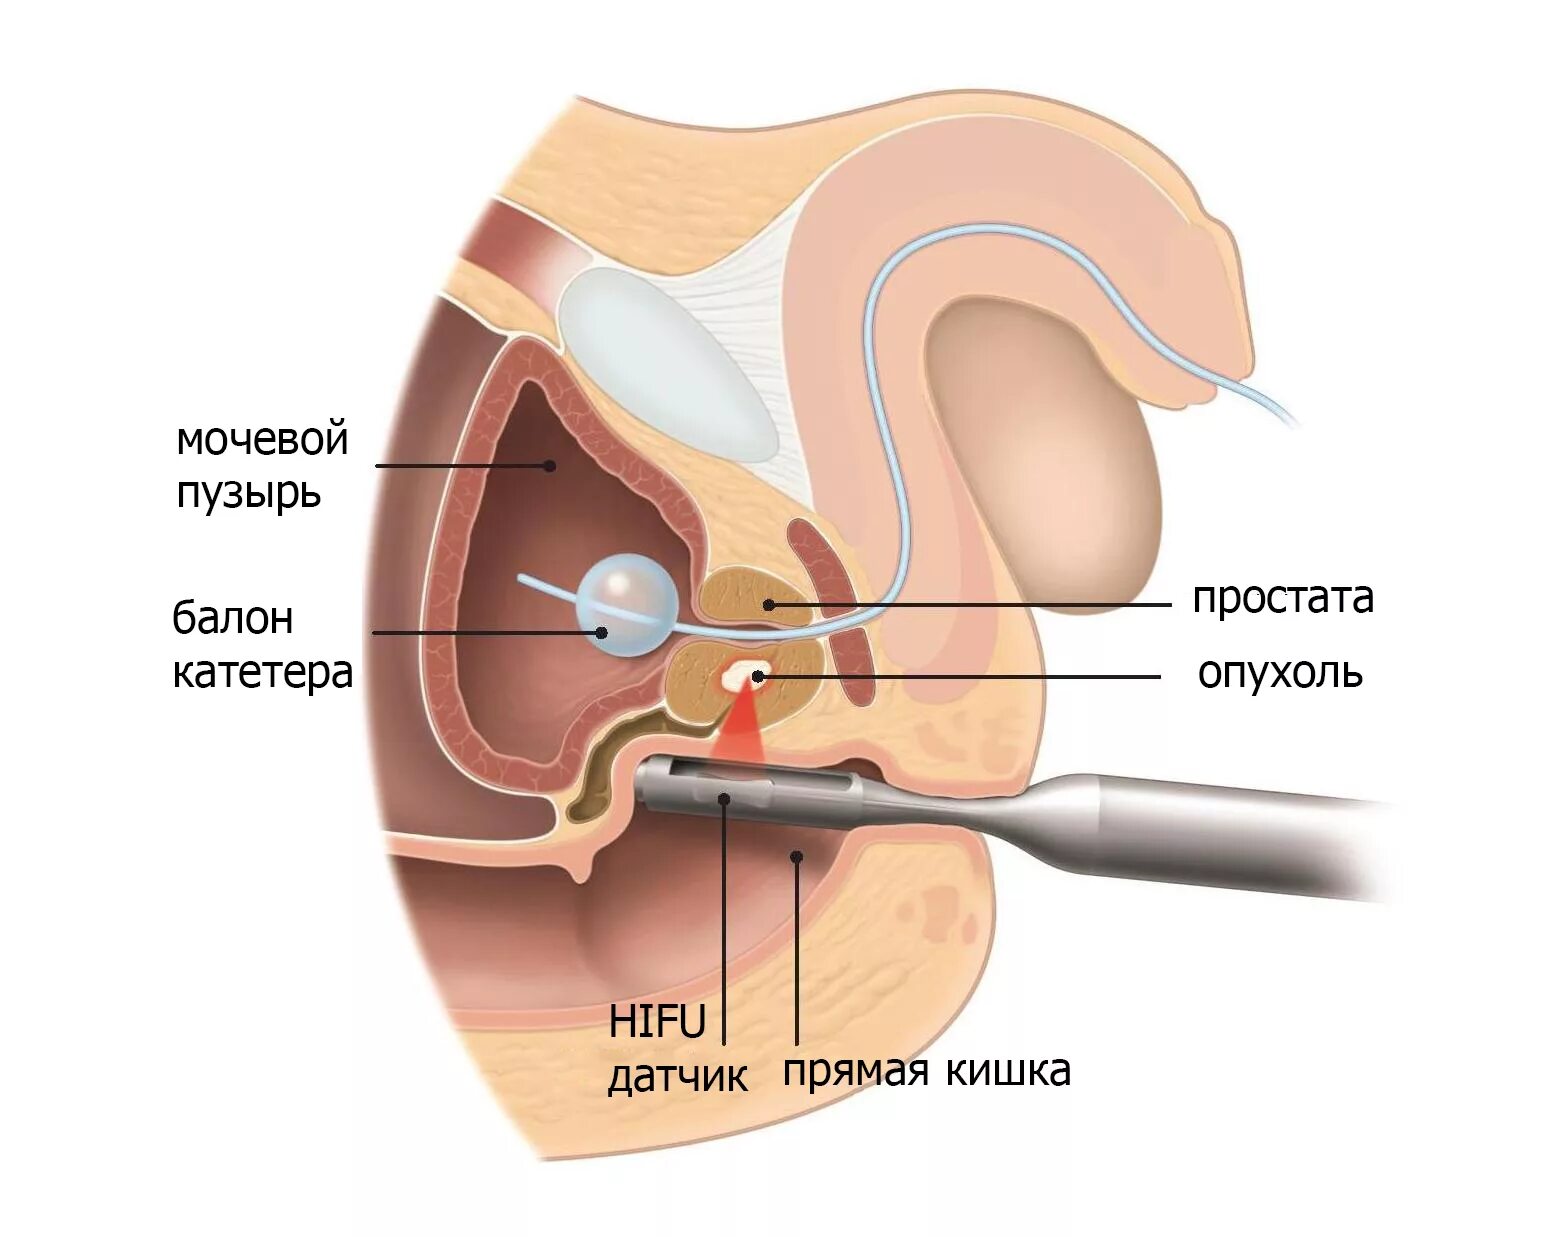 Простата урок. HIFU терапия предстательной железы. Ультразвуковая абляция предстательной железы. Предстательная железа расположение. Расположение предстательной железы в организме мужчины.